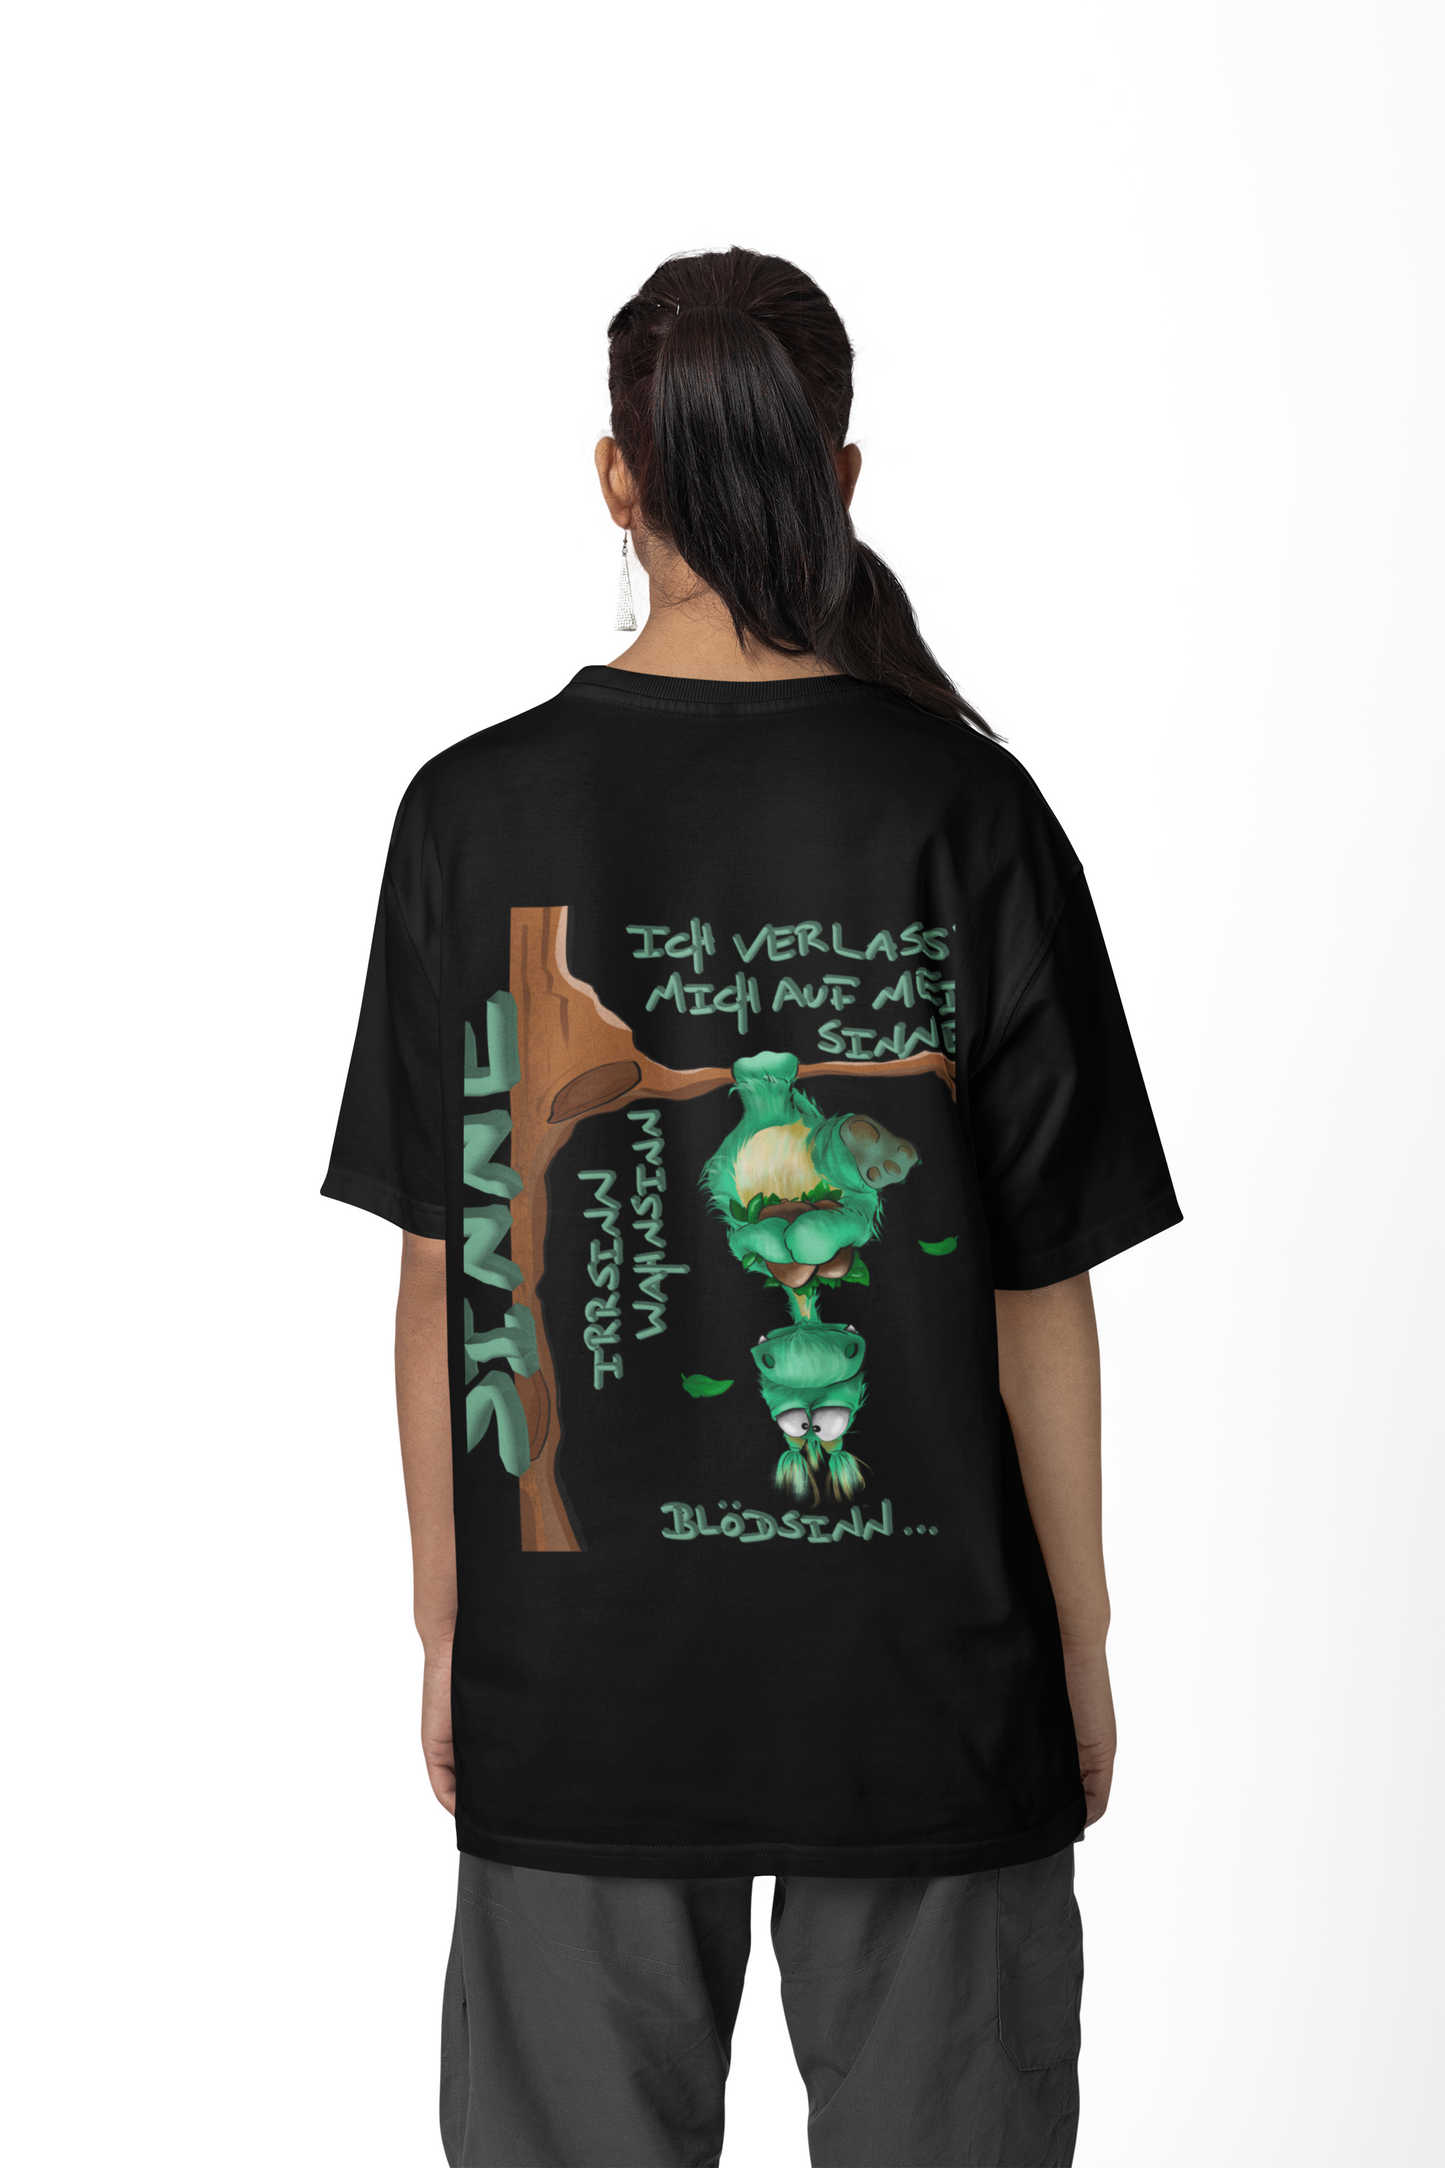 T-Shirt mit XXL Druck Kruegerhausdesign Monster in schwarz, wähle dein Motiv siehe Bilder